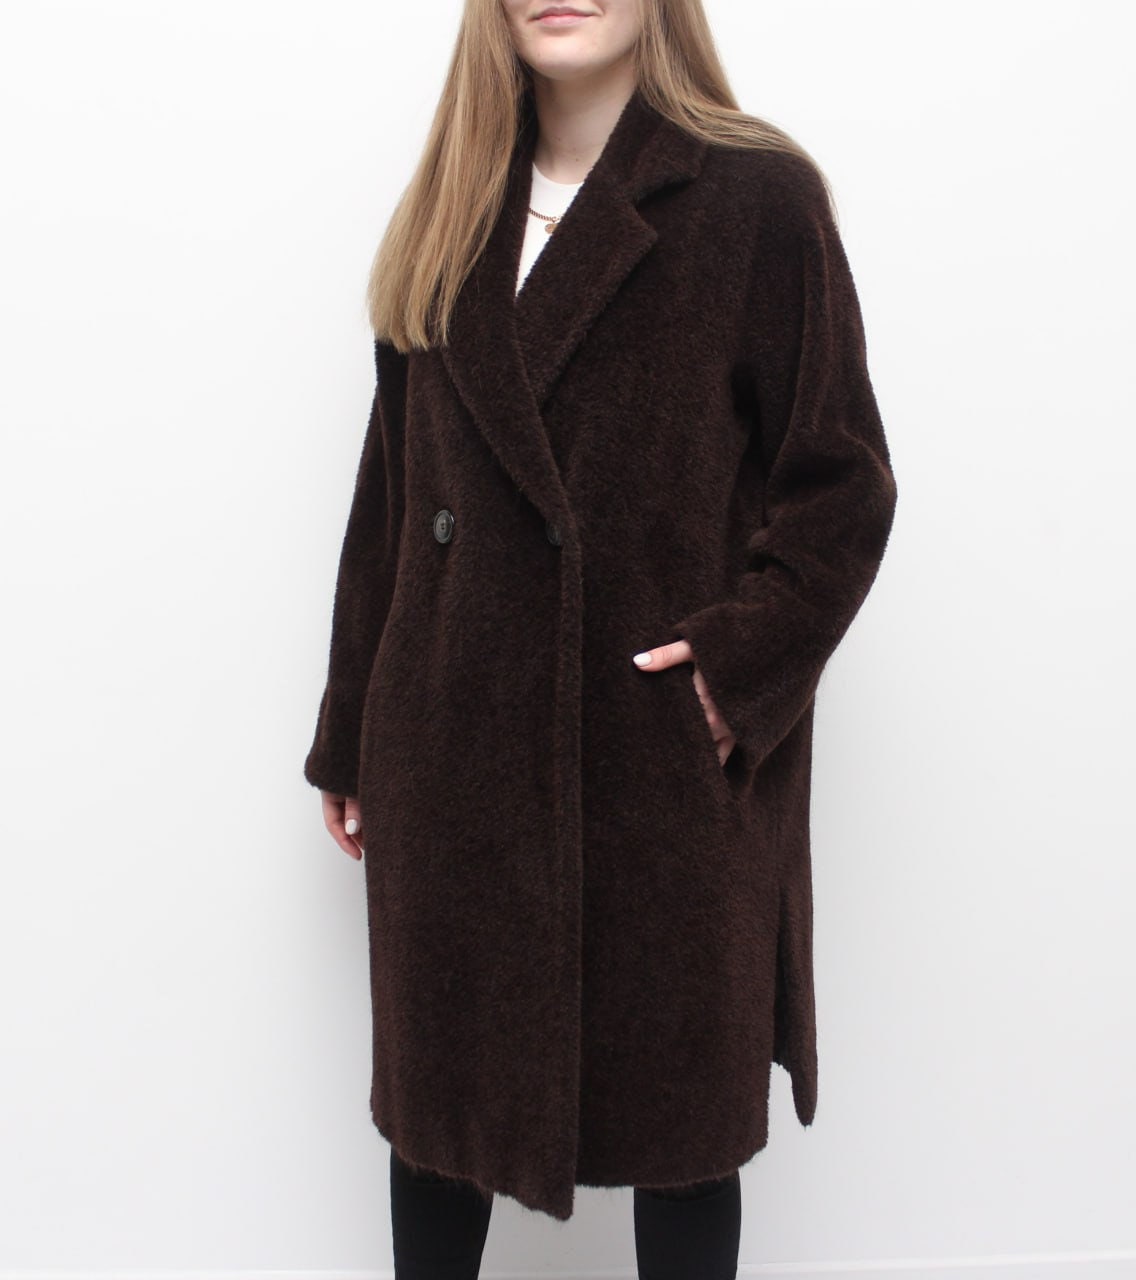 Womens MAX MARA Alpaca Wool Long Coat Oversized Overcoat 34 US4 UK6 S ...